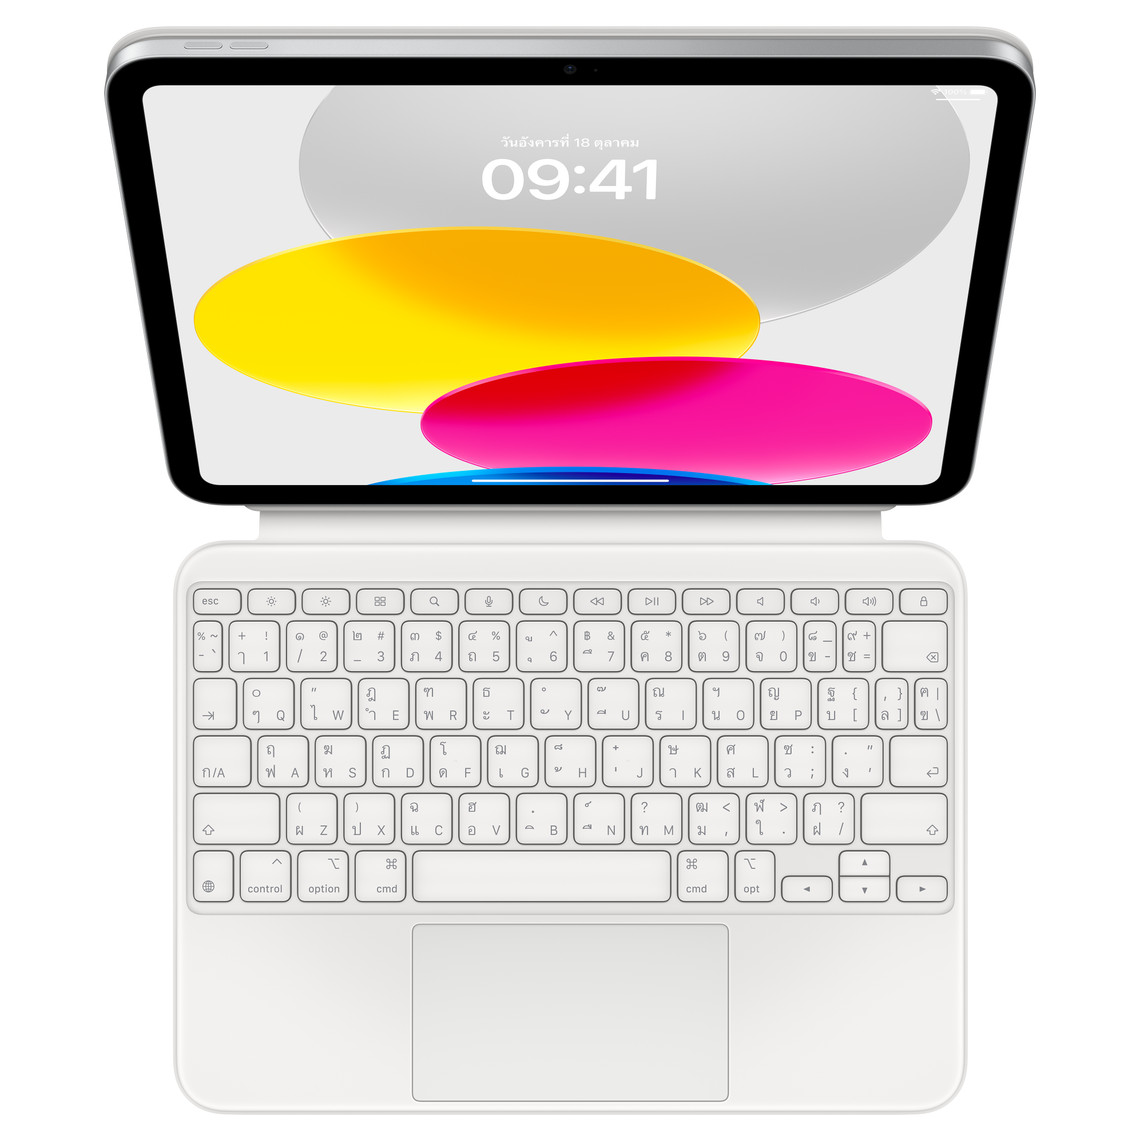 มุมมองด้านบนแบบมองลงมาที่แสดง iPad ซึ่งเชื่อมต่อกับ Magic Keyboard Folio ที่วางบนพื้นราบ หน้าจอที่แสดงภาพกราฟิกวงกลมหลากสี